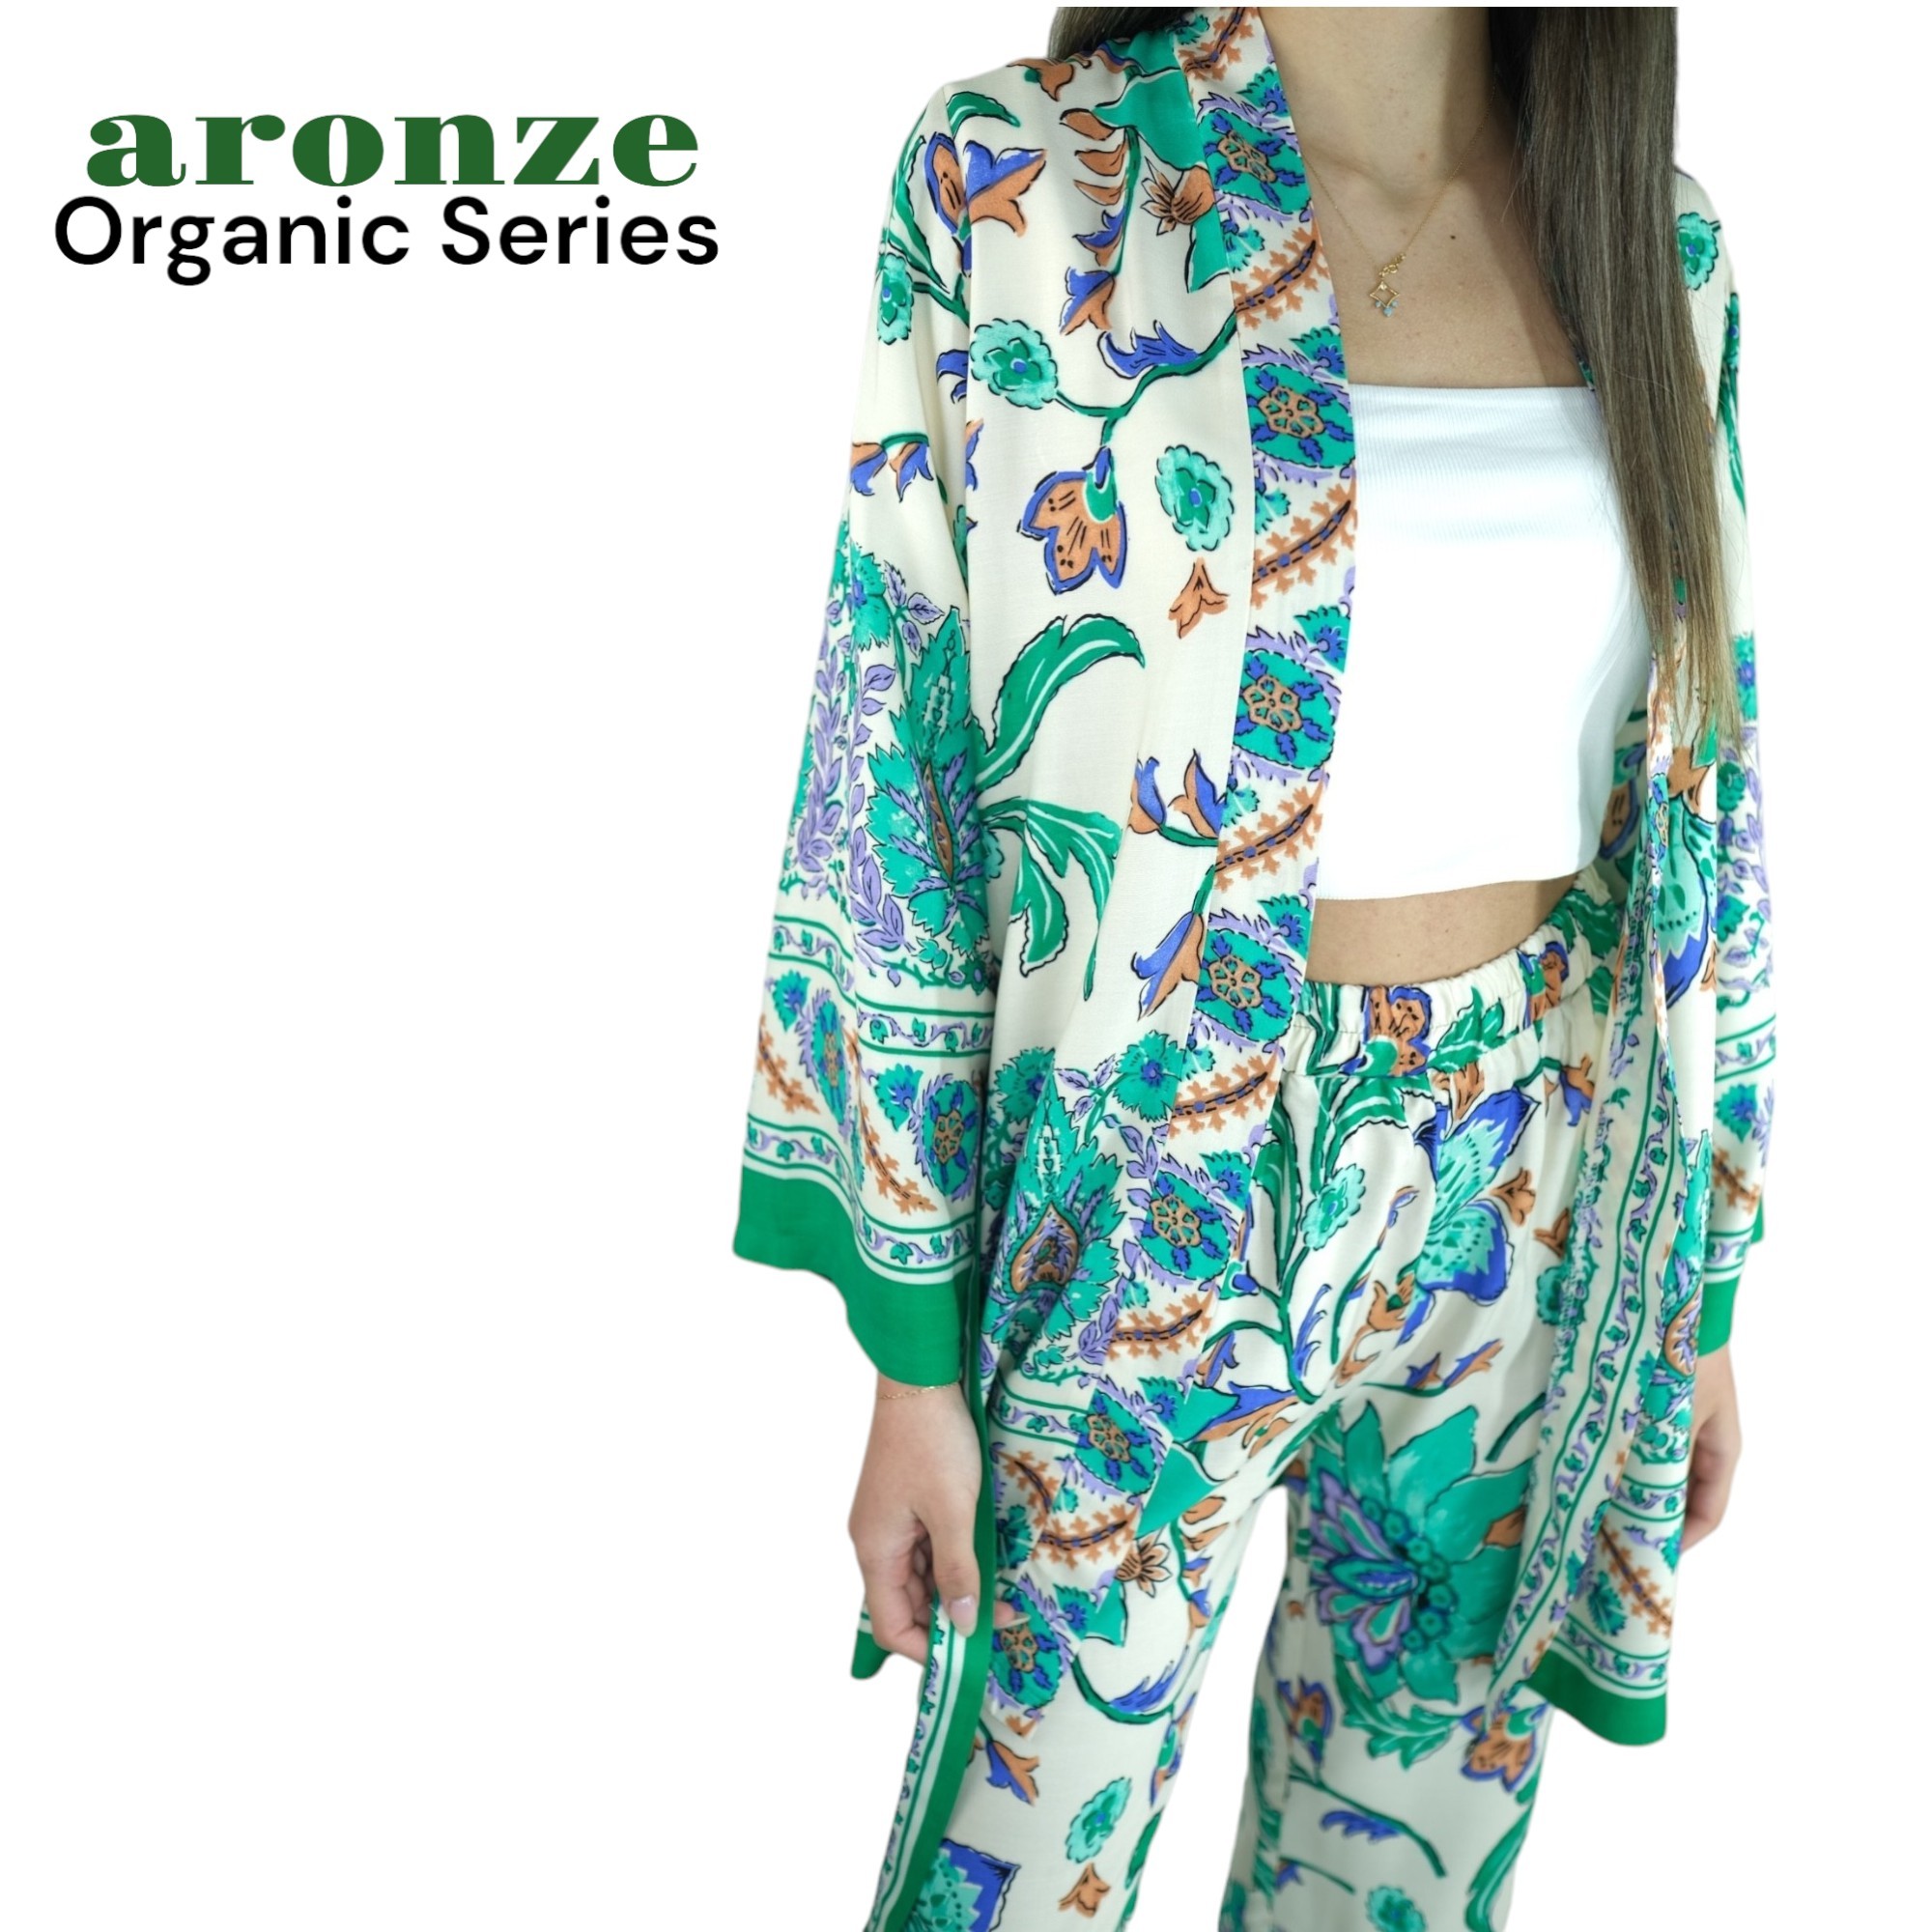 Aronze Organic Series %100 Türk Pamuğu Viskon Kimono  - ÇİÇEK DESEN 5